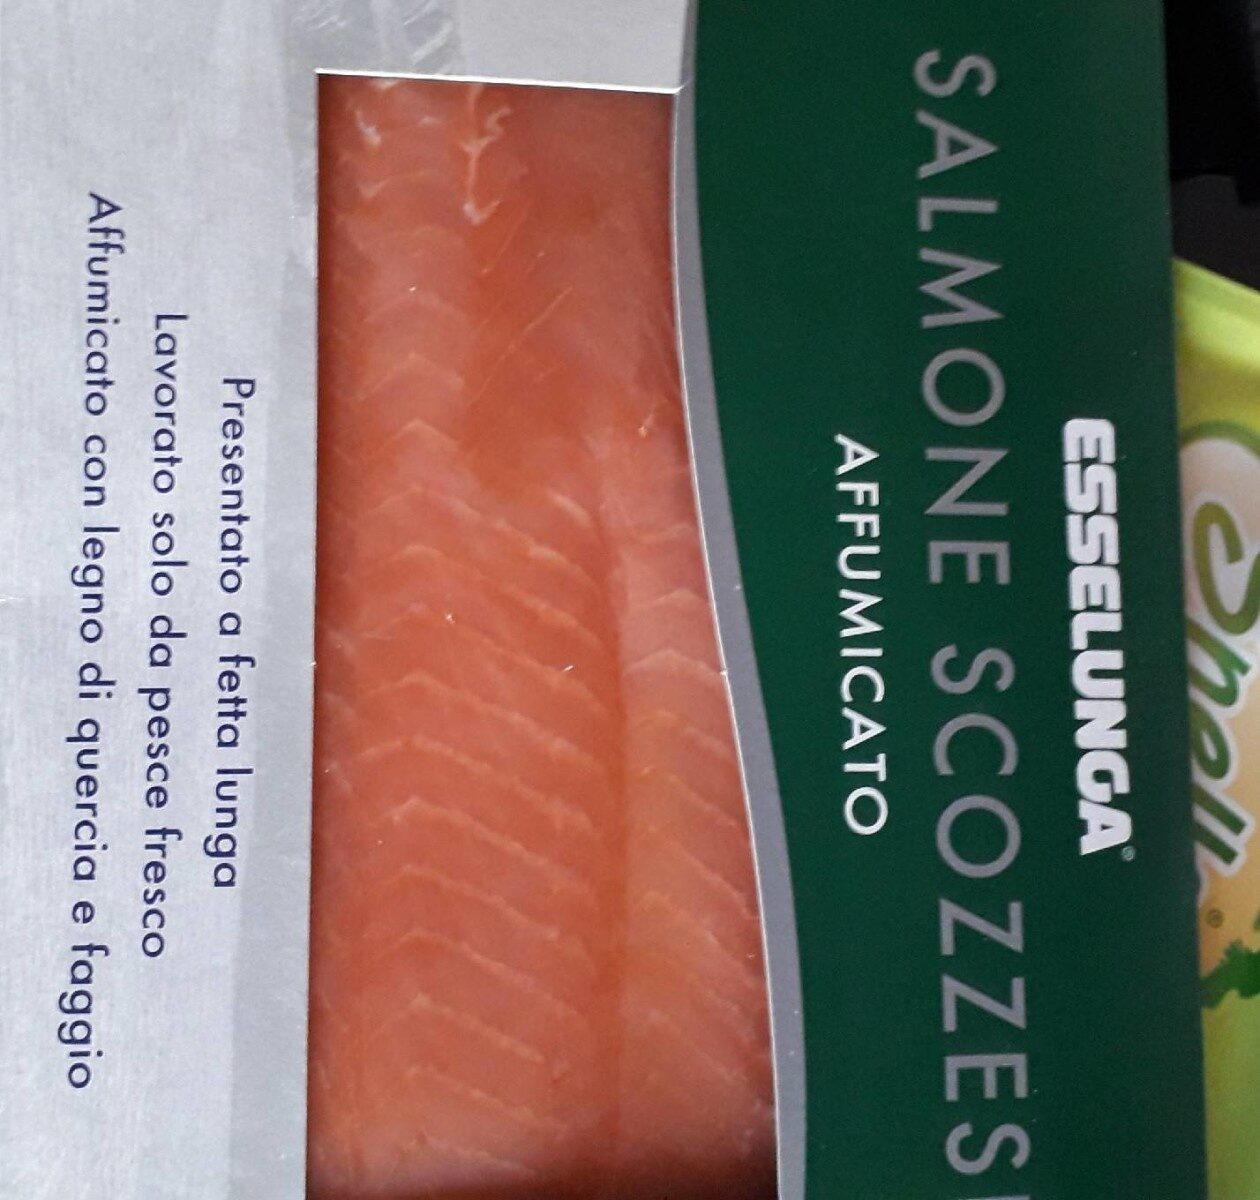 Salmone scozzese affumicato - Prodotto